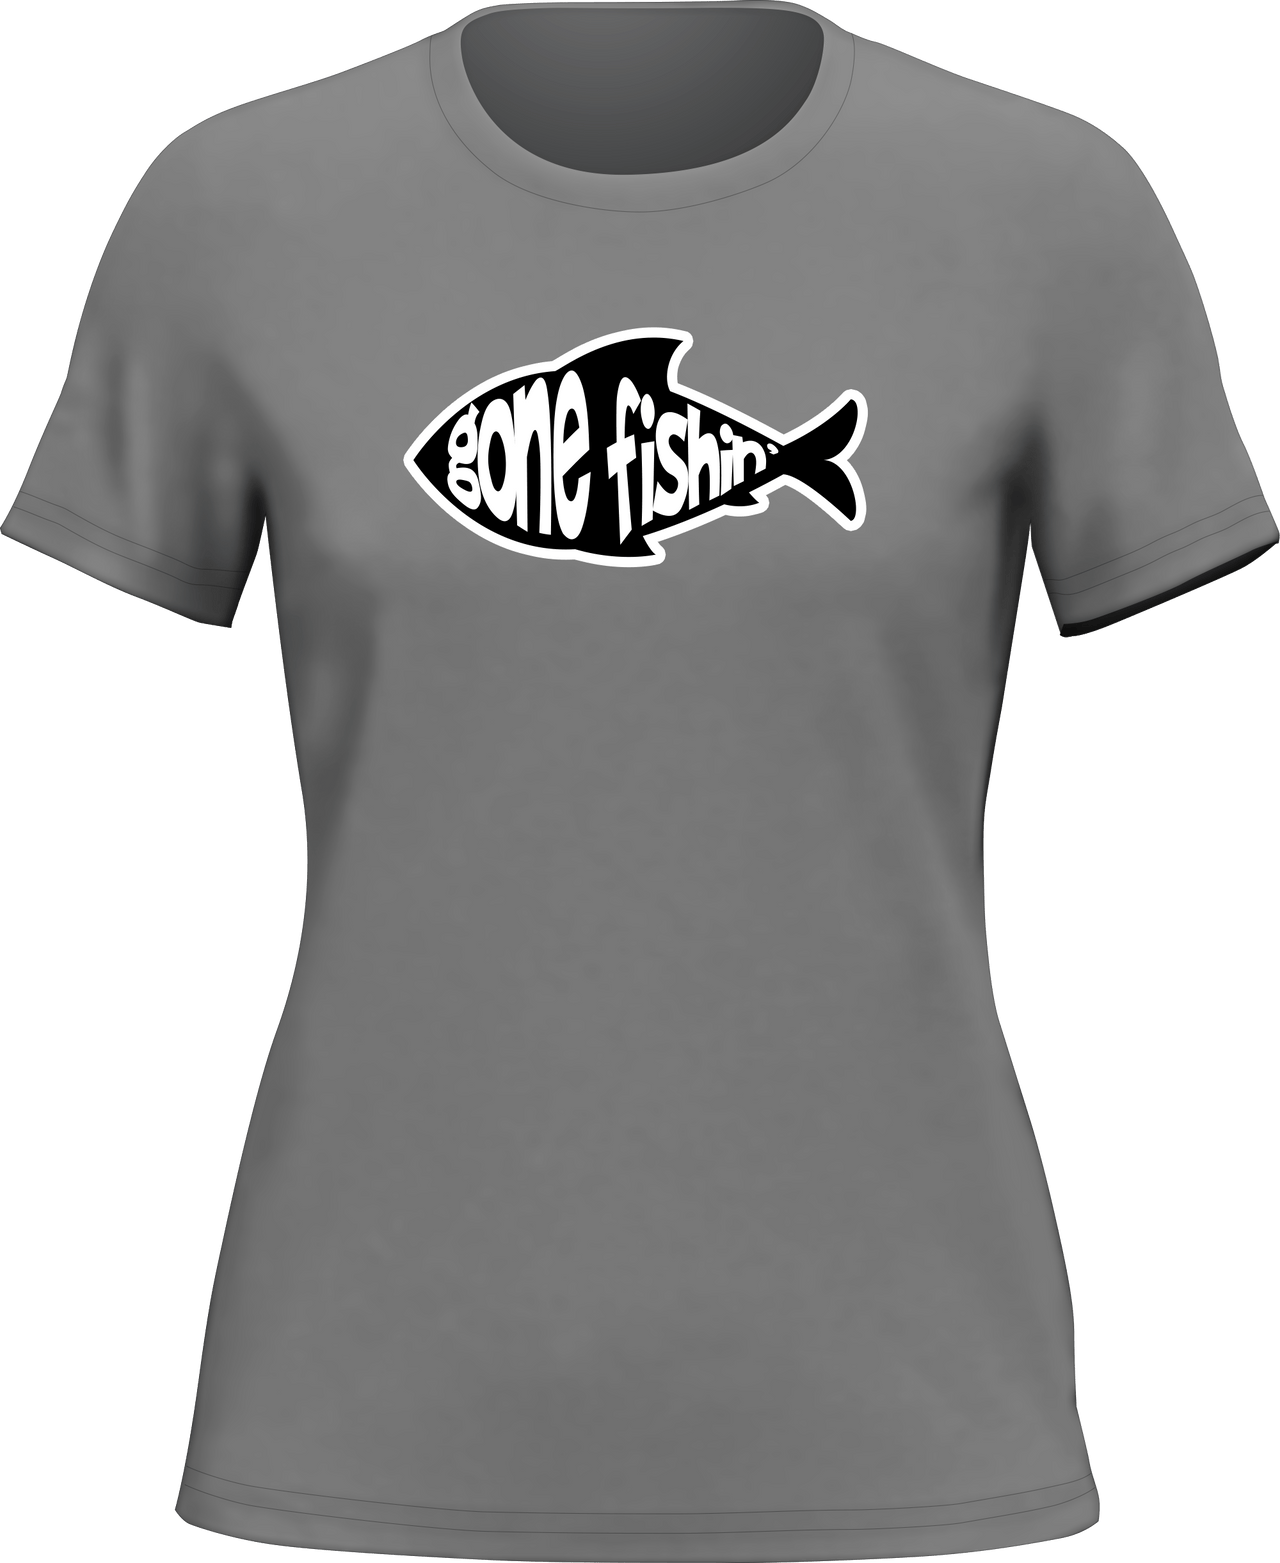 Gone Fishing v3 T-Shirt for Women